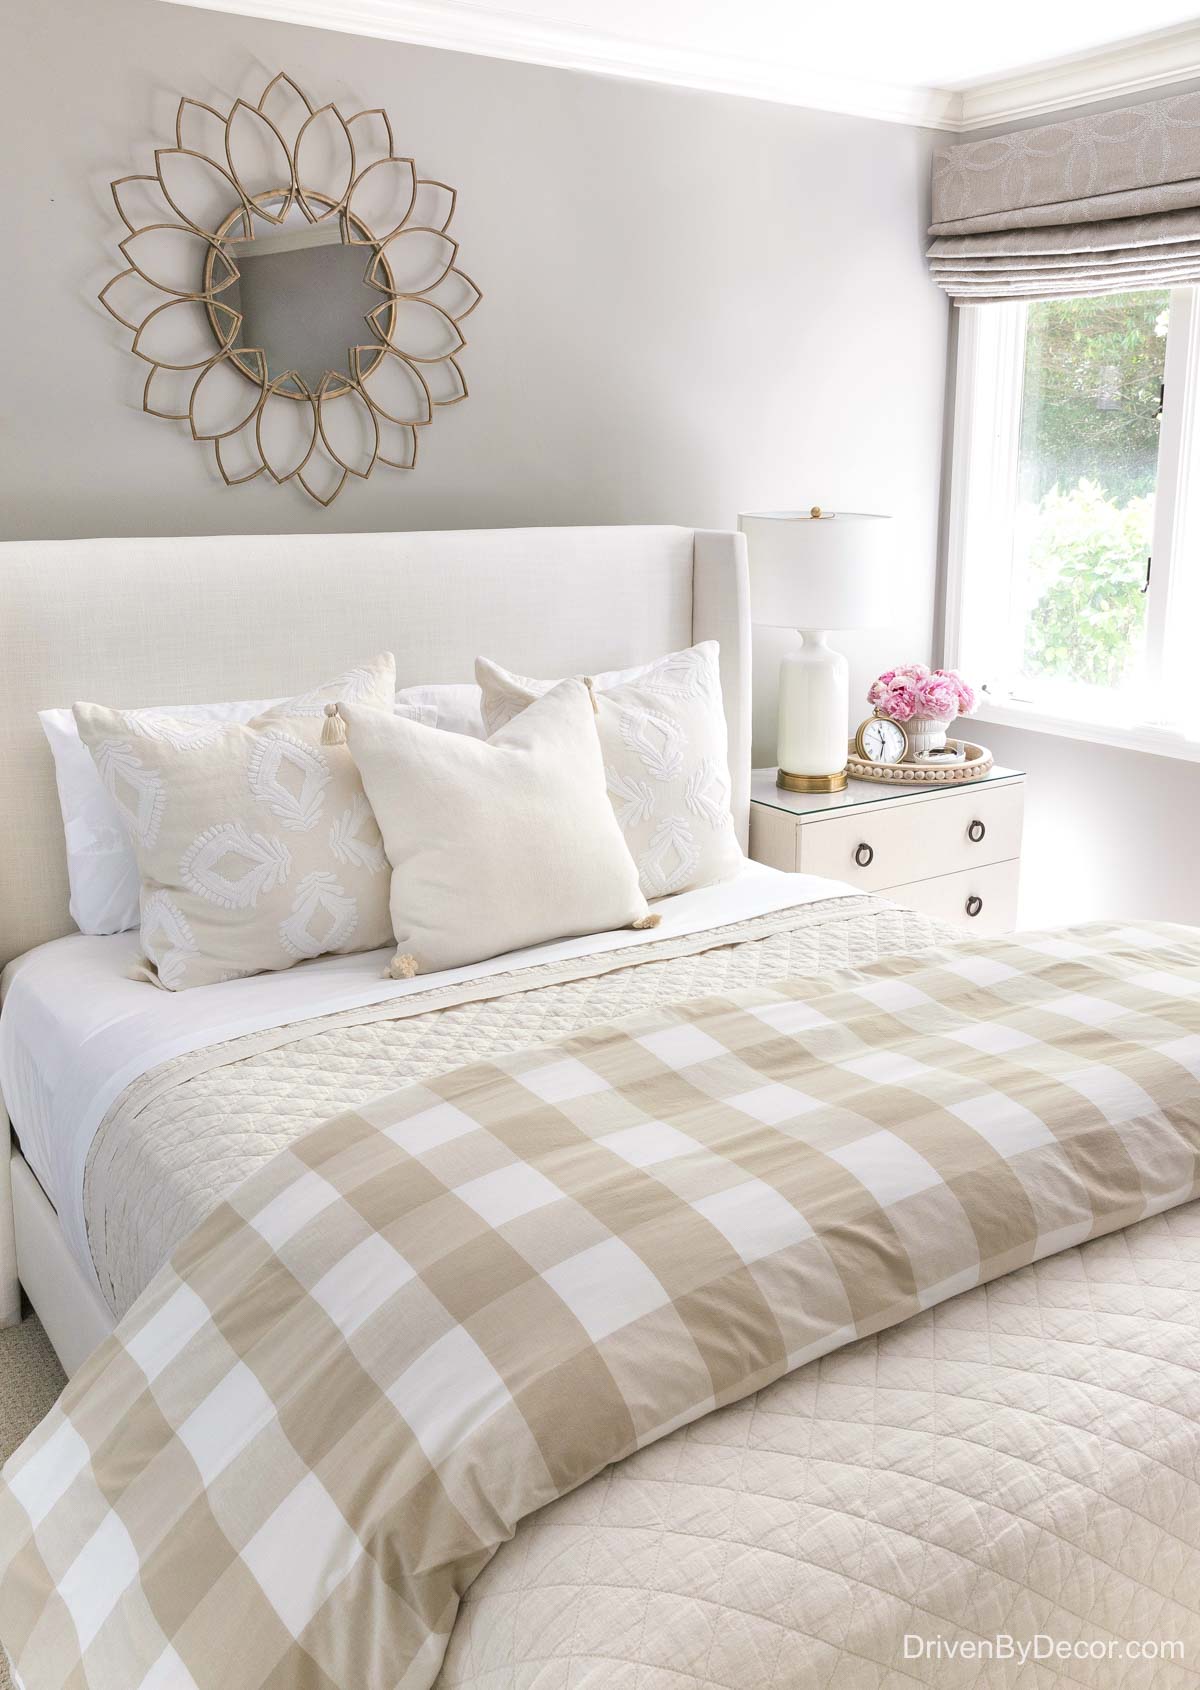 Guest bedroom in neutral tones